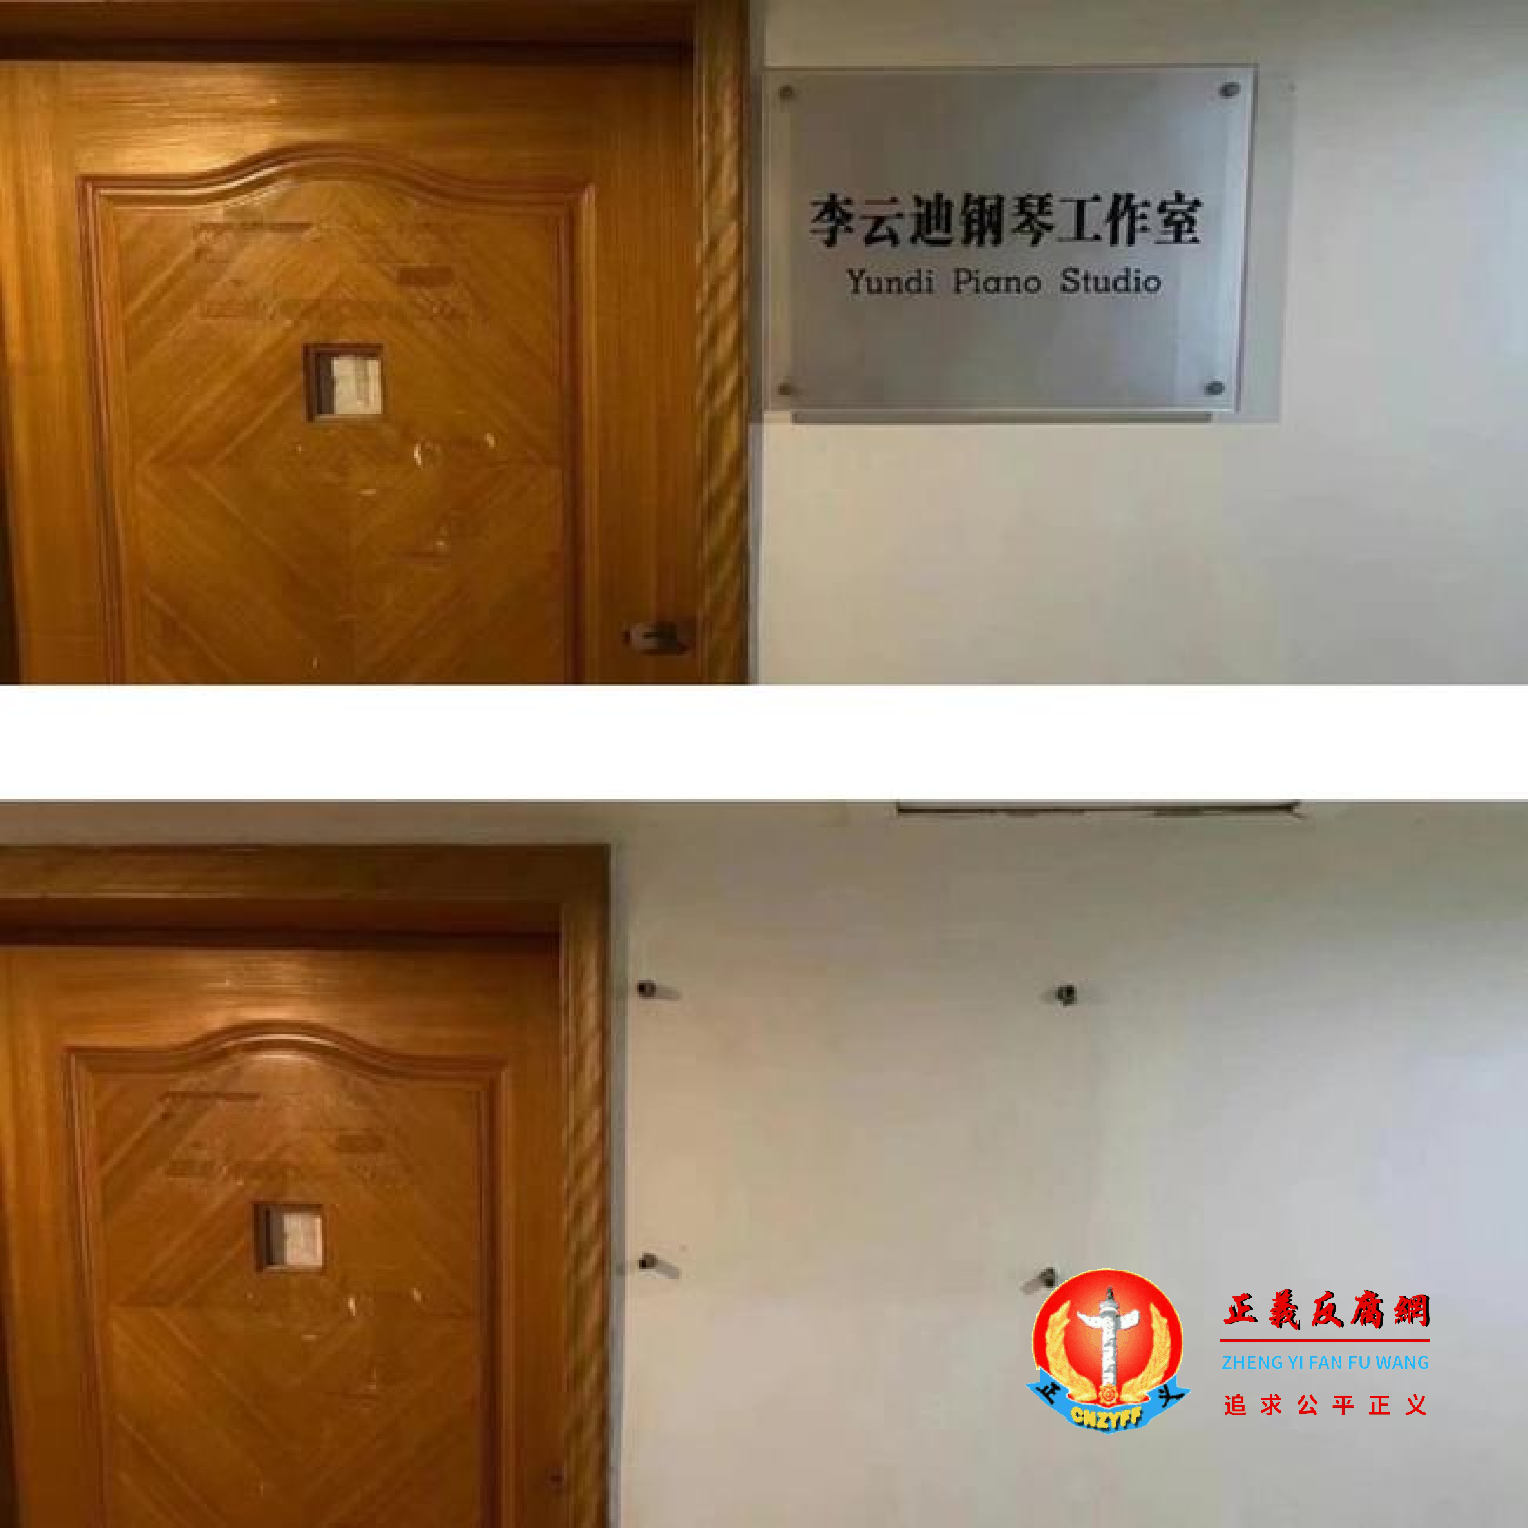 四川音乐学院的李云迪钢琴工作室牌子也被撤下。.png